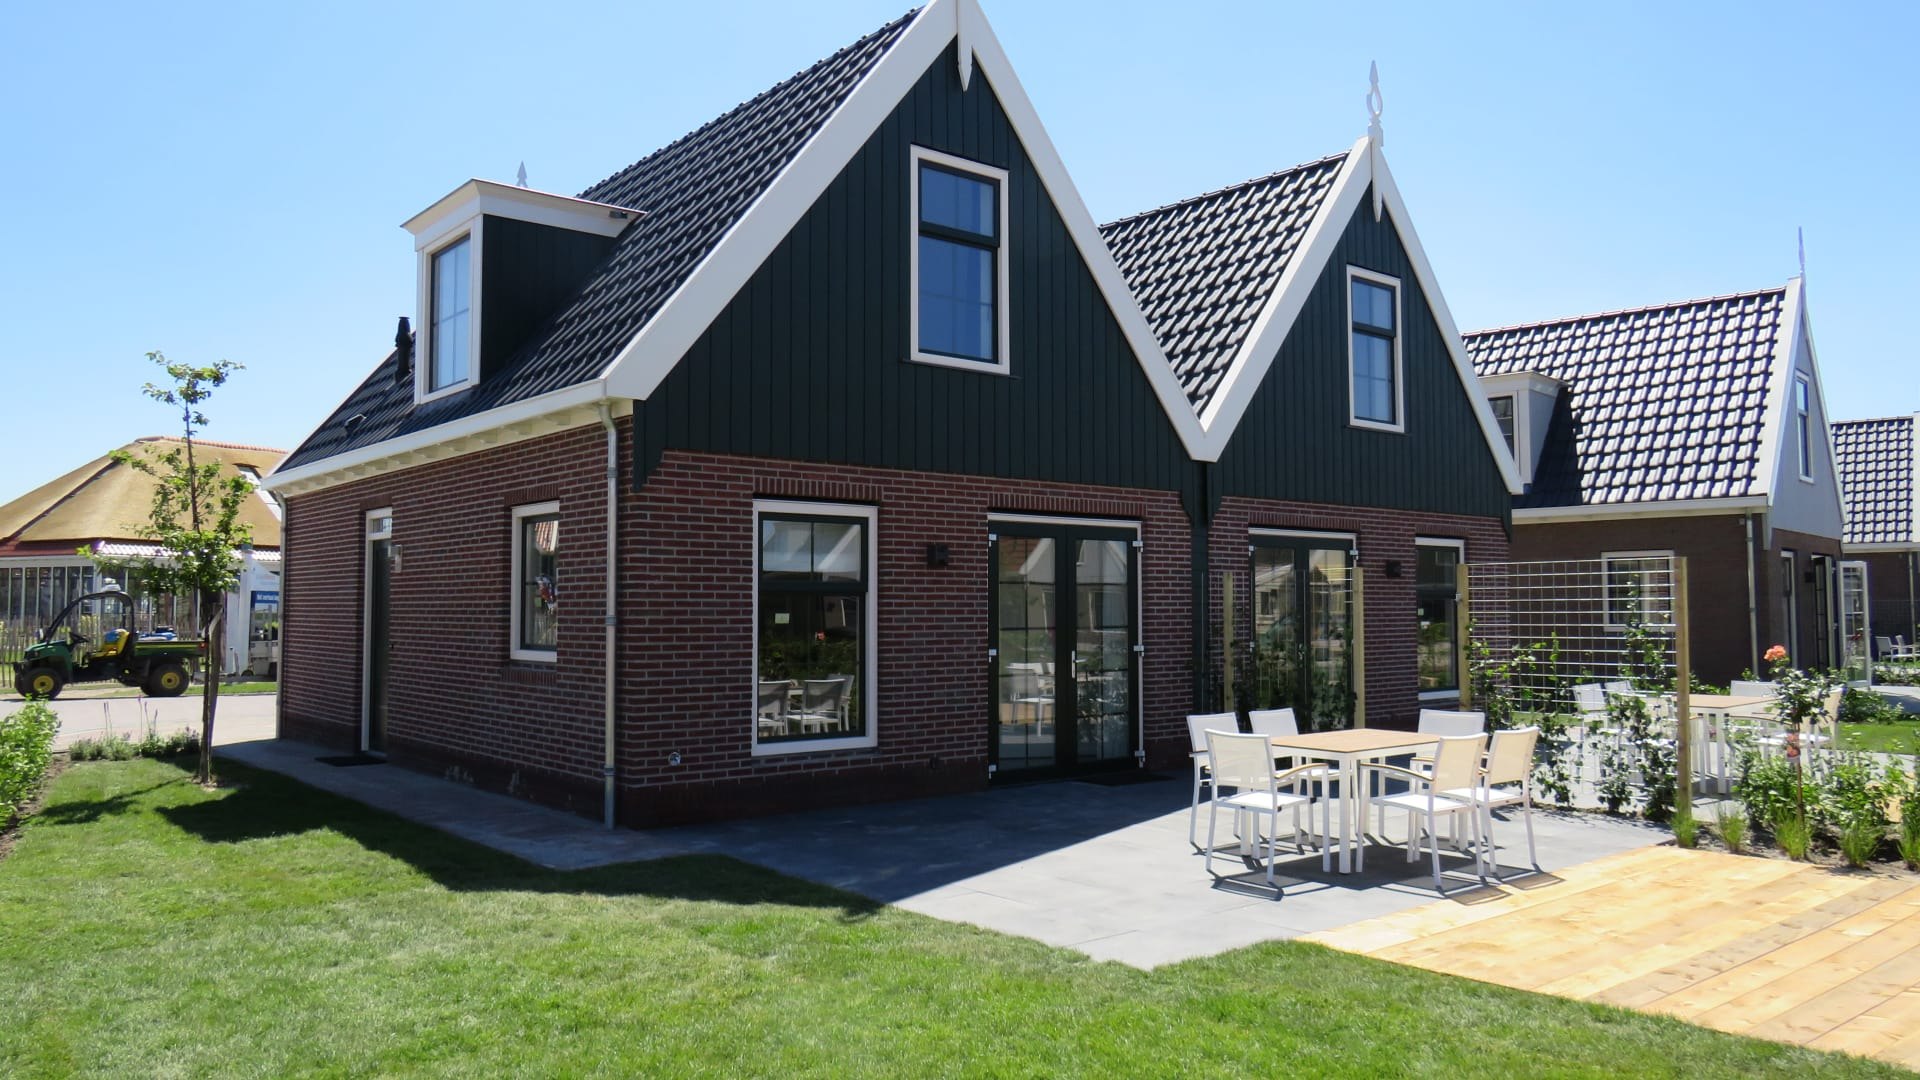 Голландский дом отзывы. Дом в голландском стиле. Домик в голландском стиле. Проекты голландских домов. Фасад дома в голландском стиле.